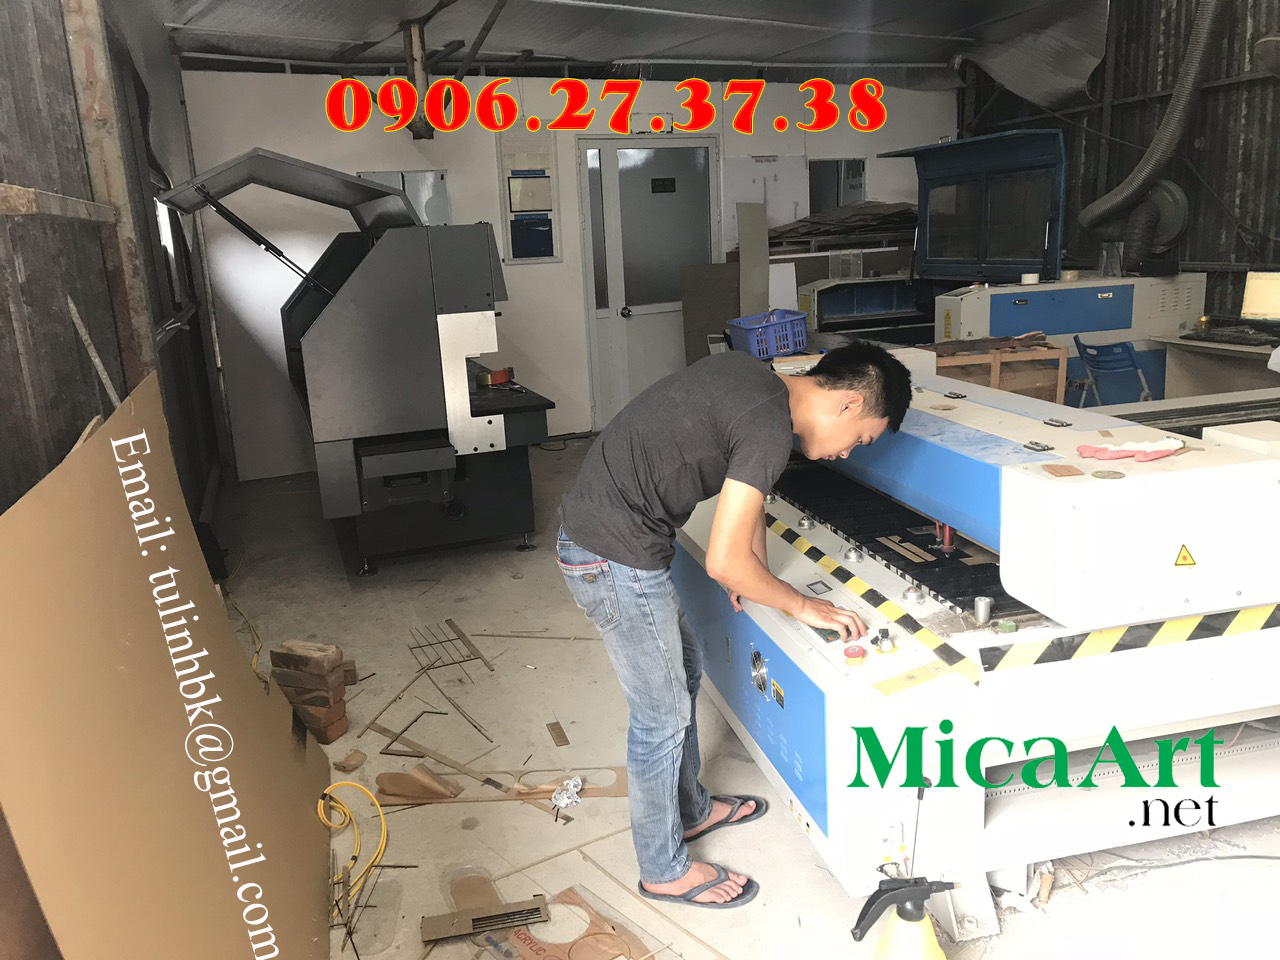 Xưởng gia công Mica đẹp & Kệ Mica chất lượng cao theo yêu cầu tại Hà Nội